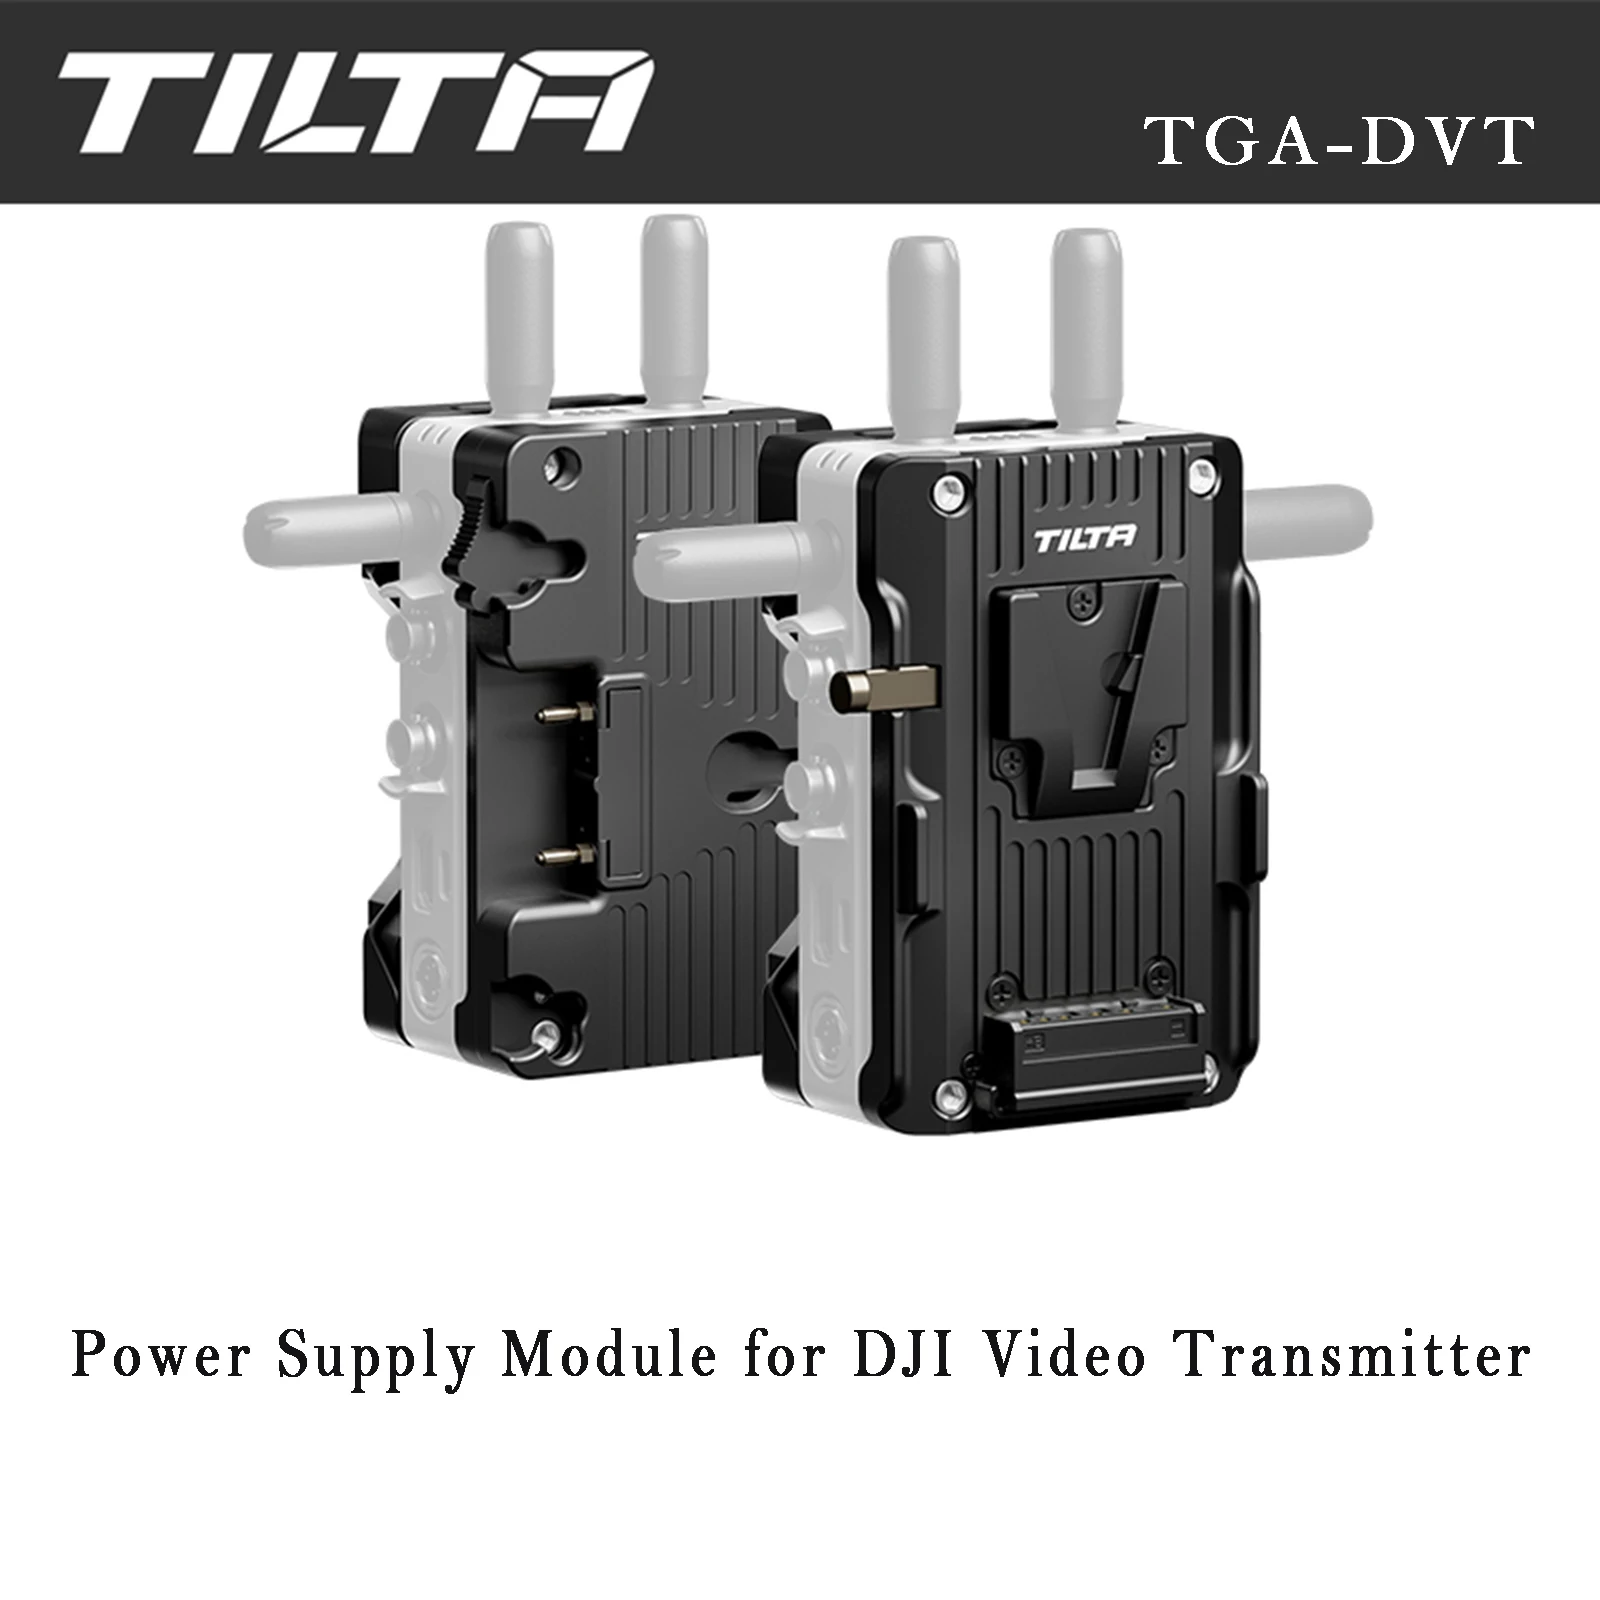 

TILTA TGA-DVT Power Supply Module Gold Mount / V-Mount for DJI Video Transmitter